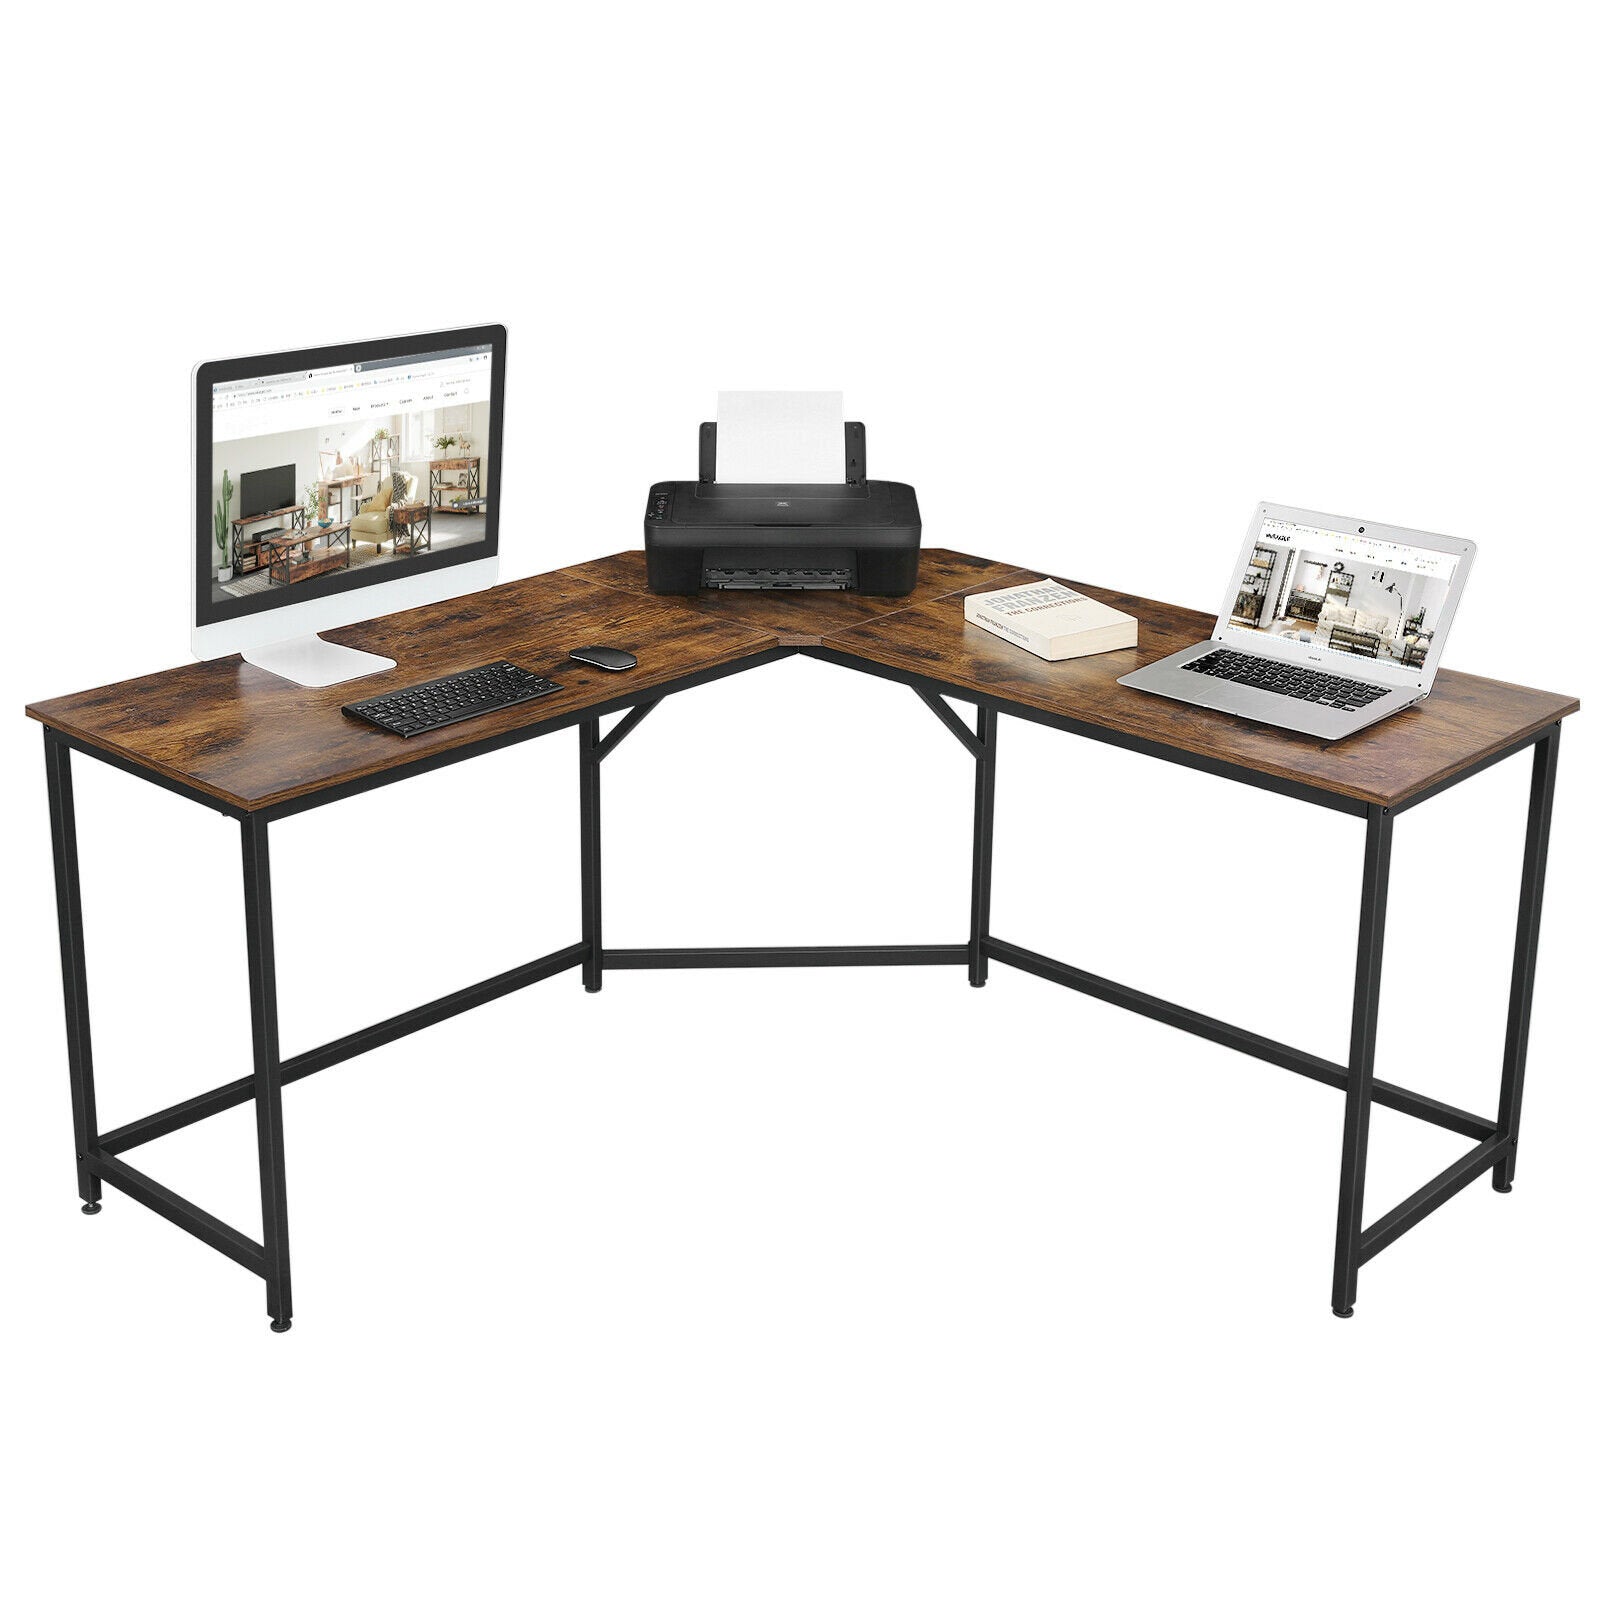 Rena Large Corner Desk Industrial Design